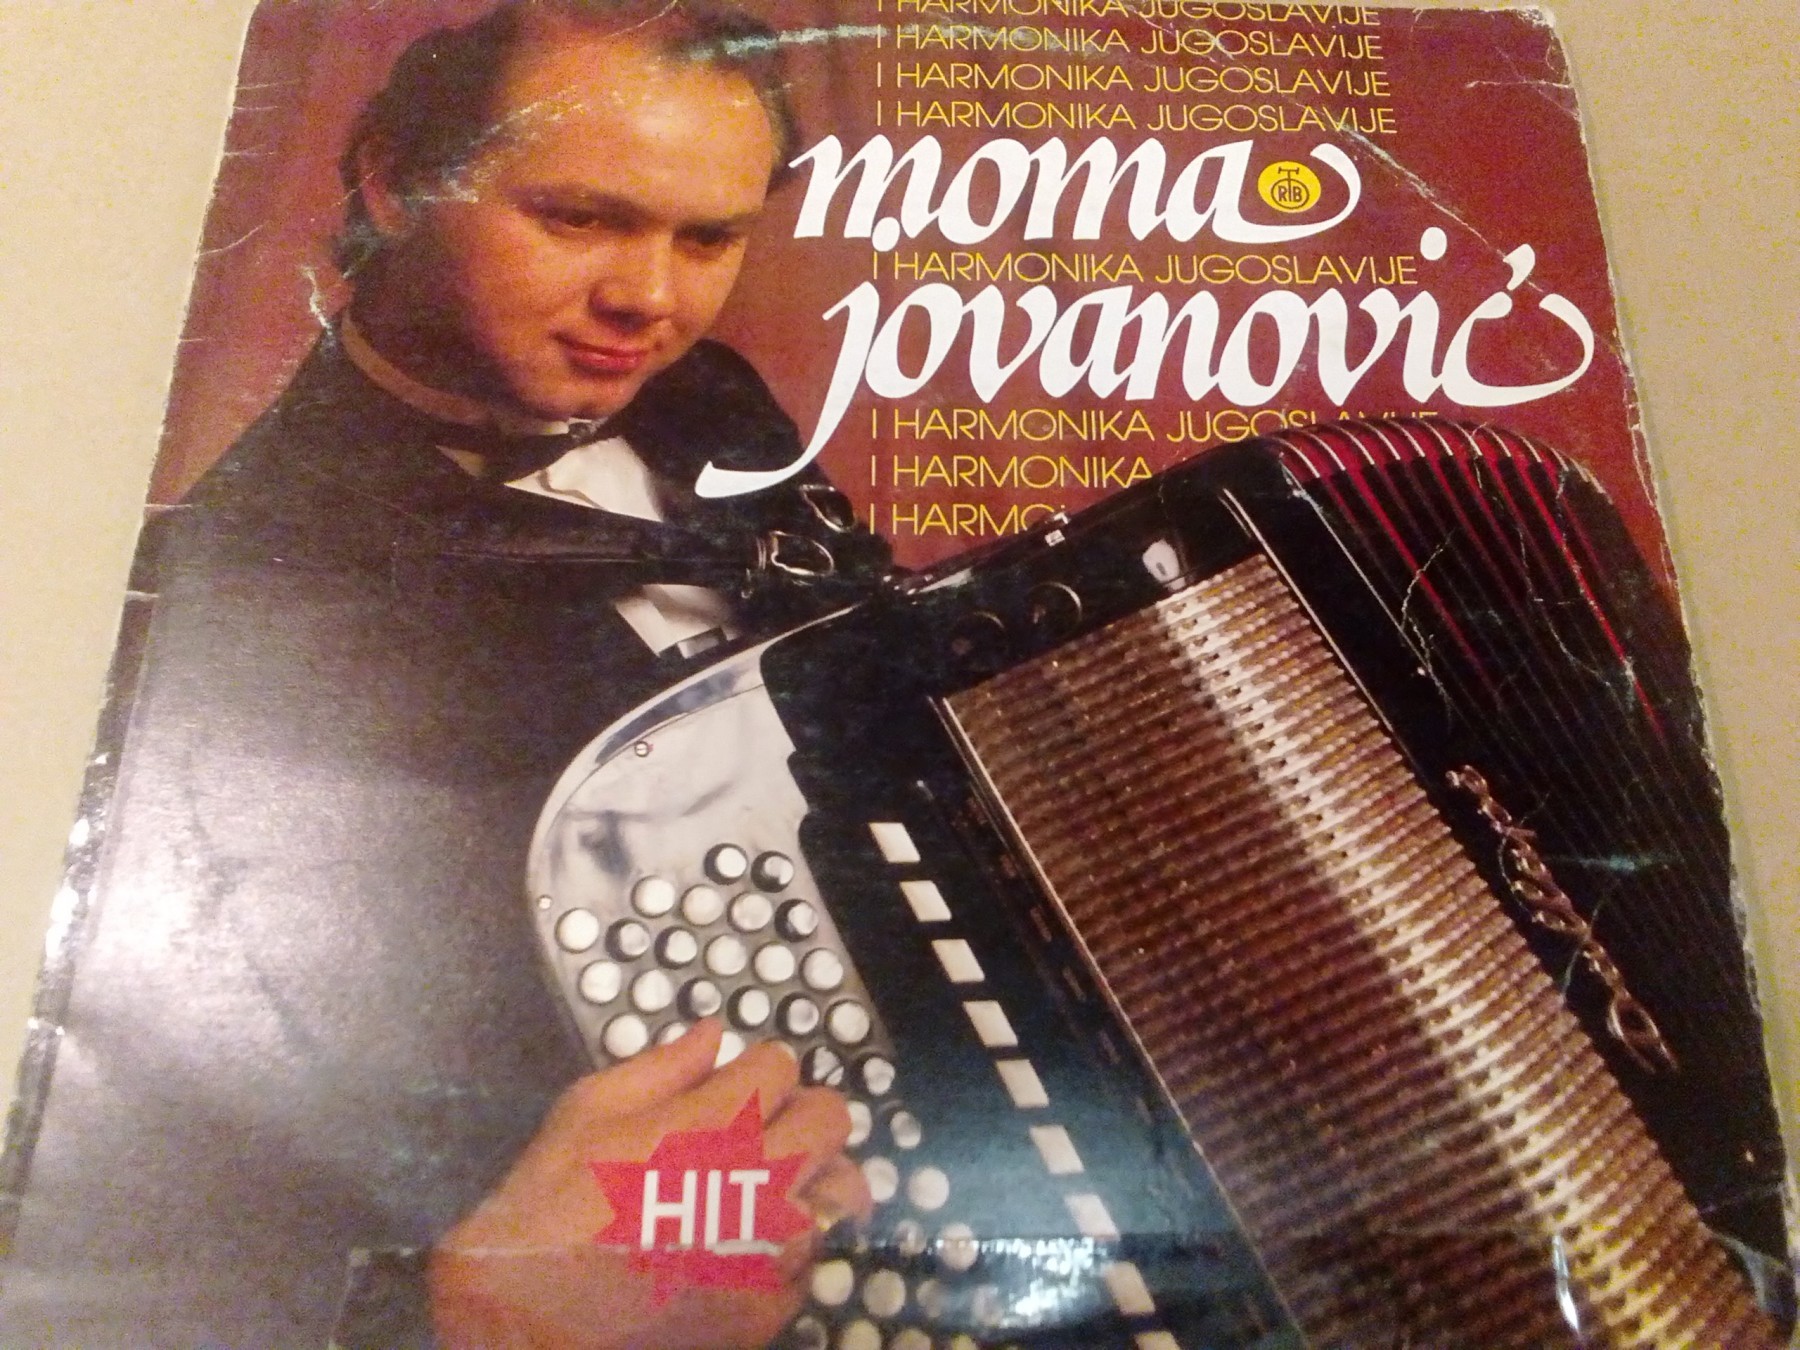 Moma Jovanovic 86 a